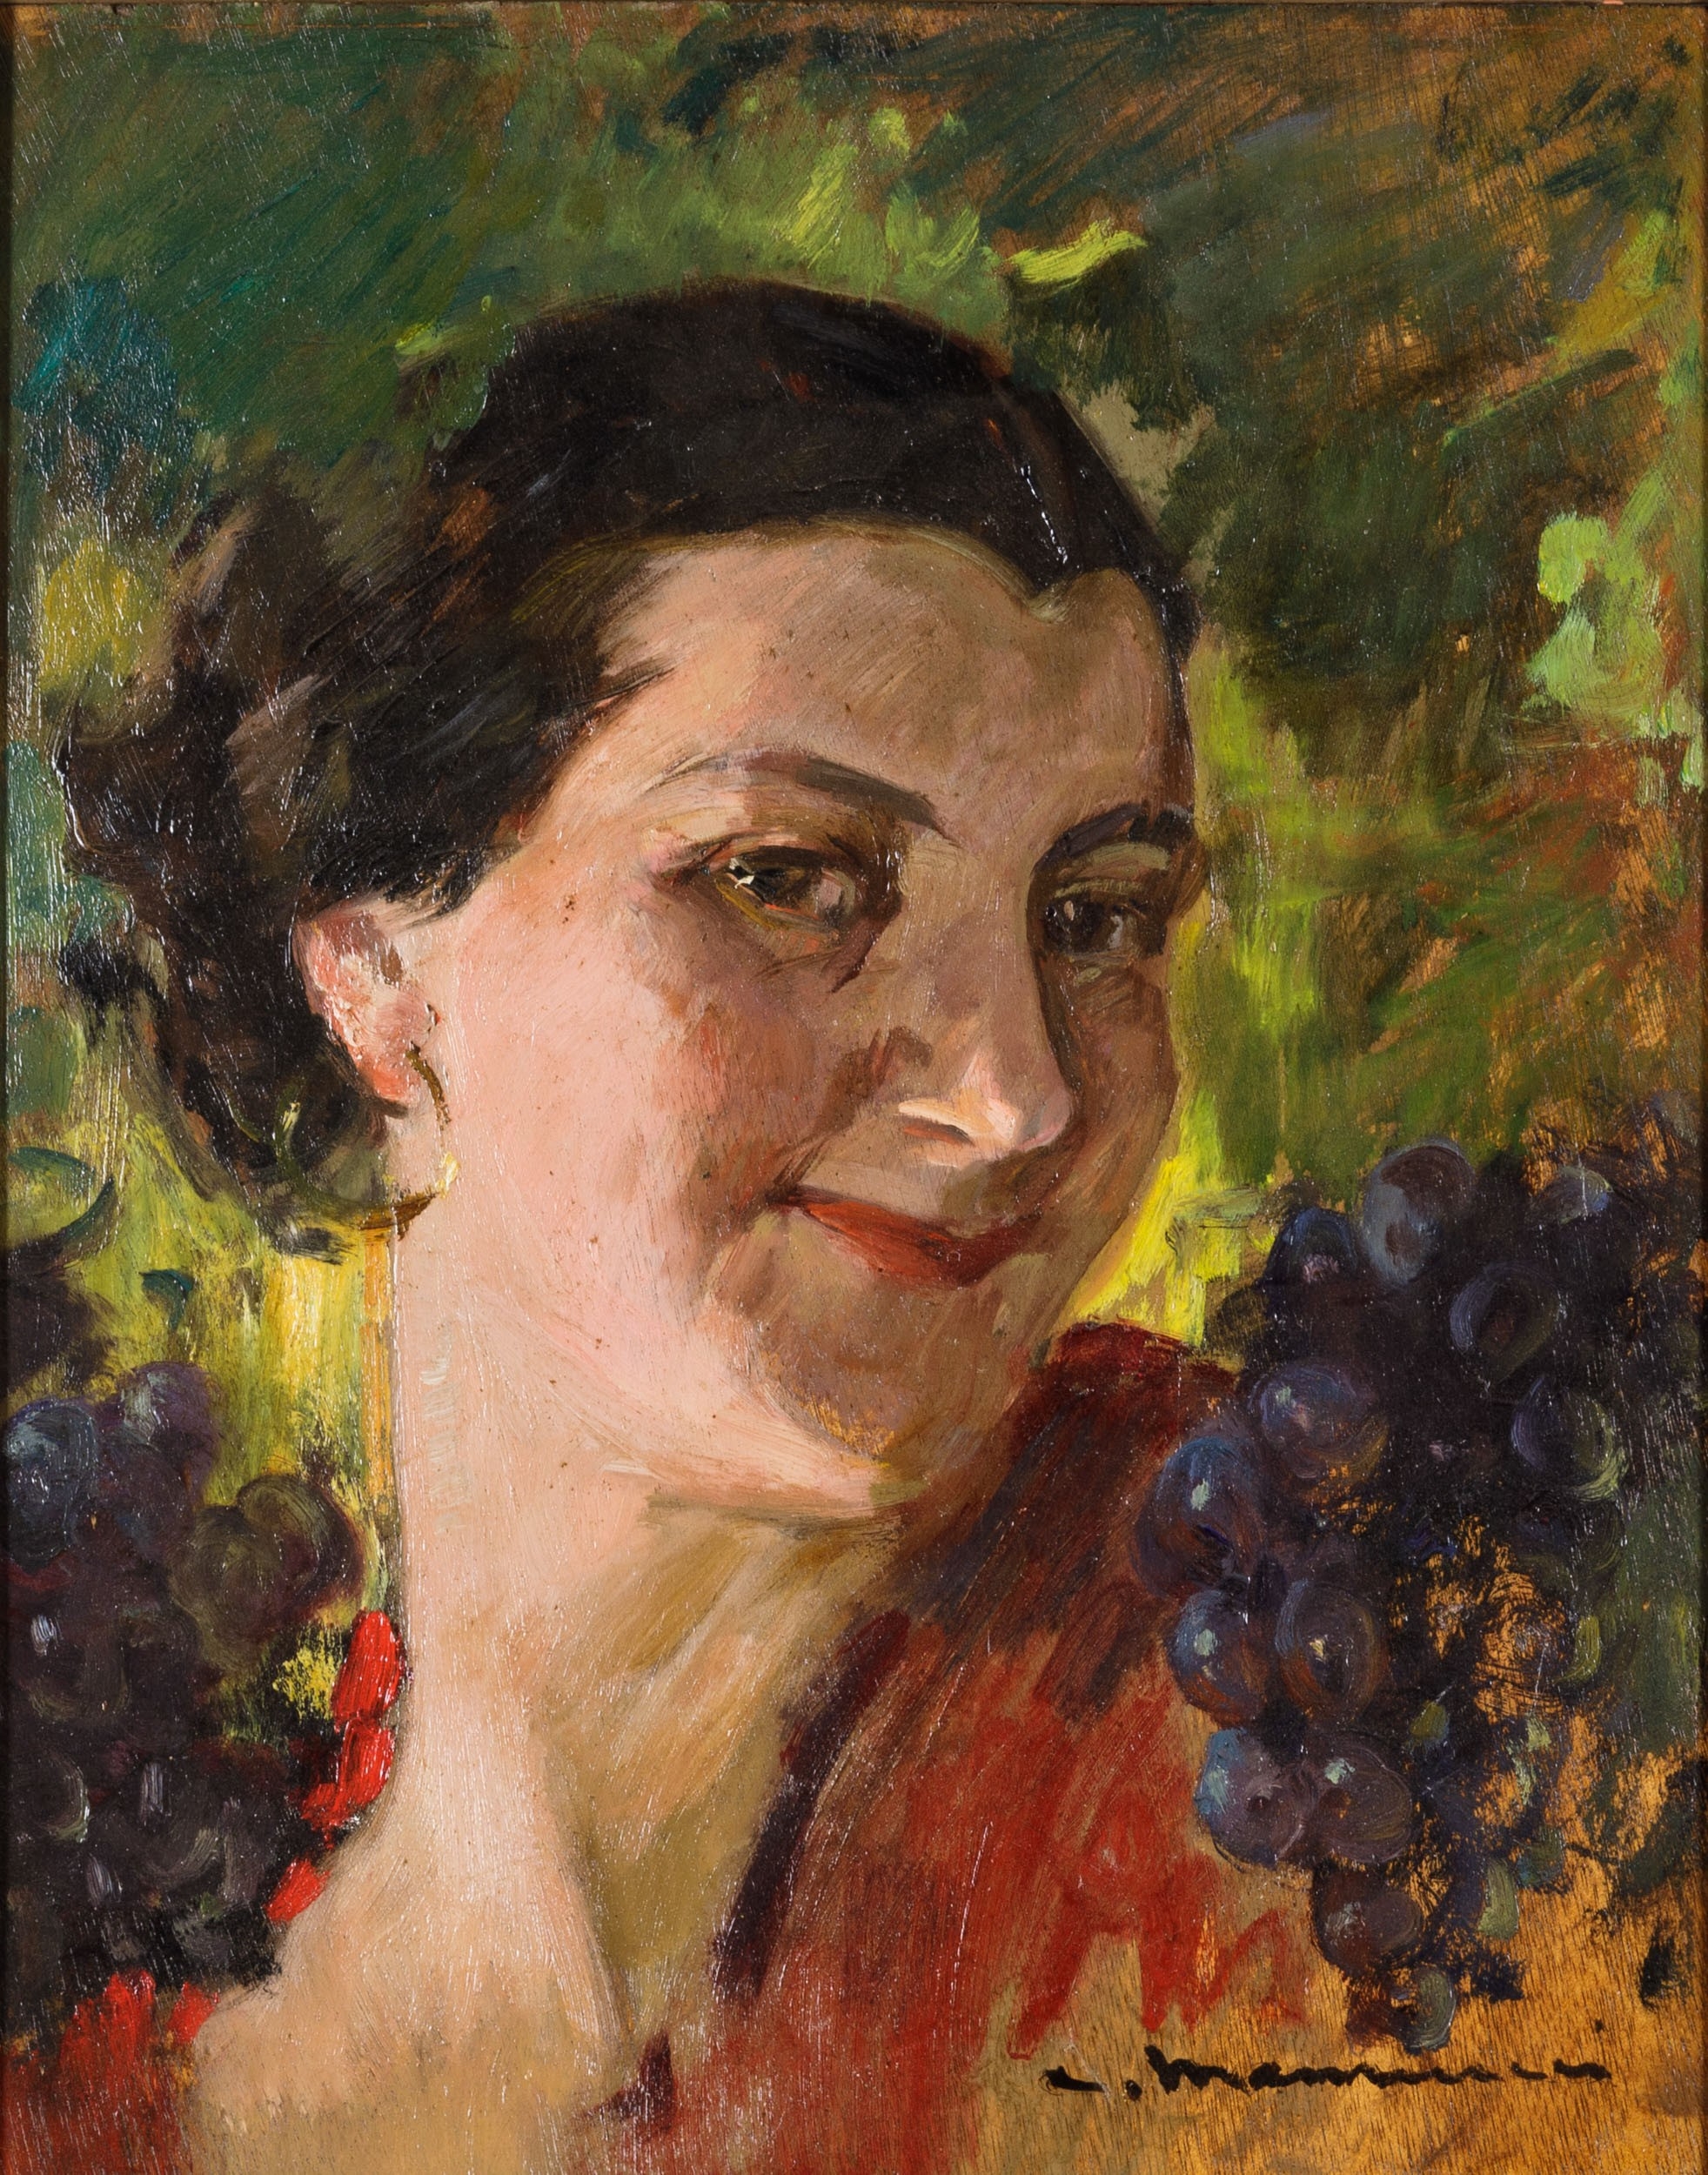 Ritratto di fanciulla by Cipriano Mannucci, 1937